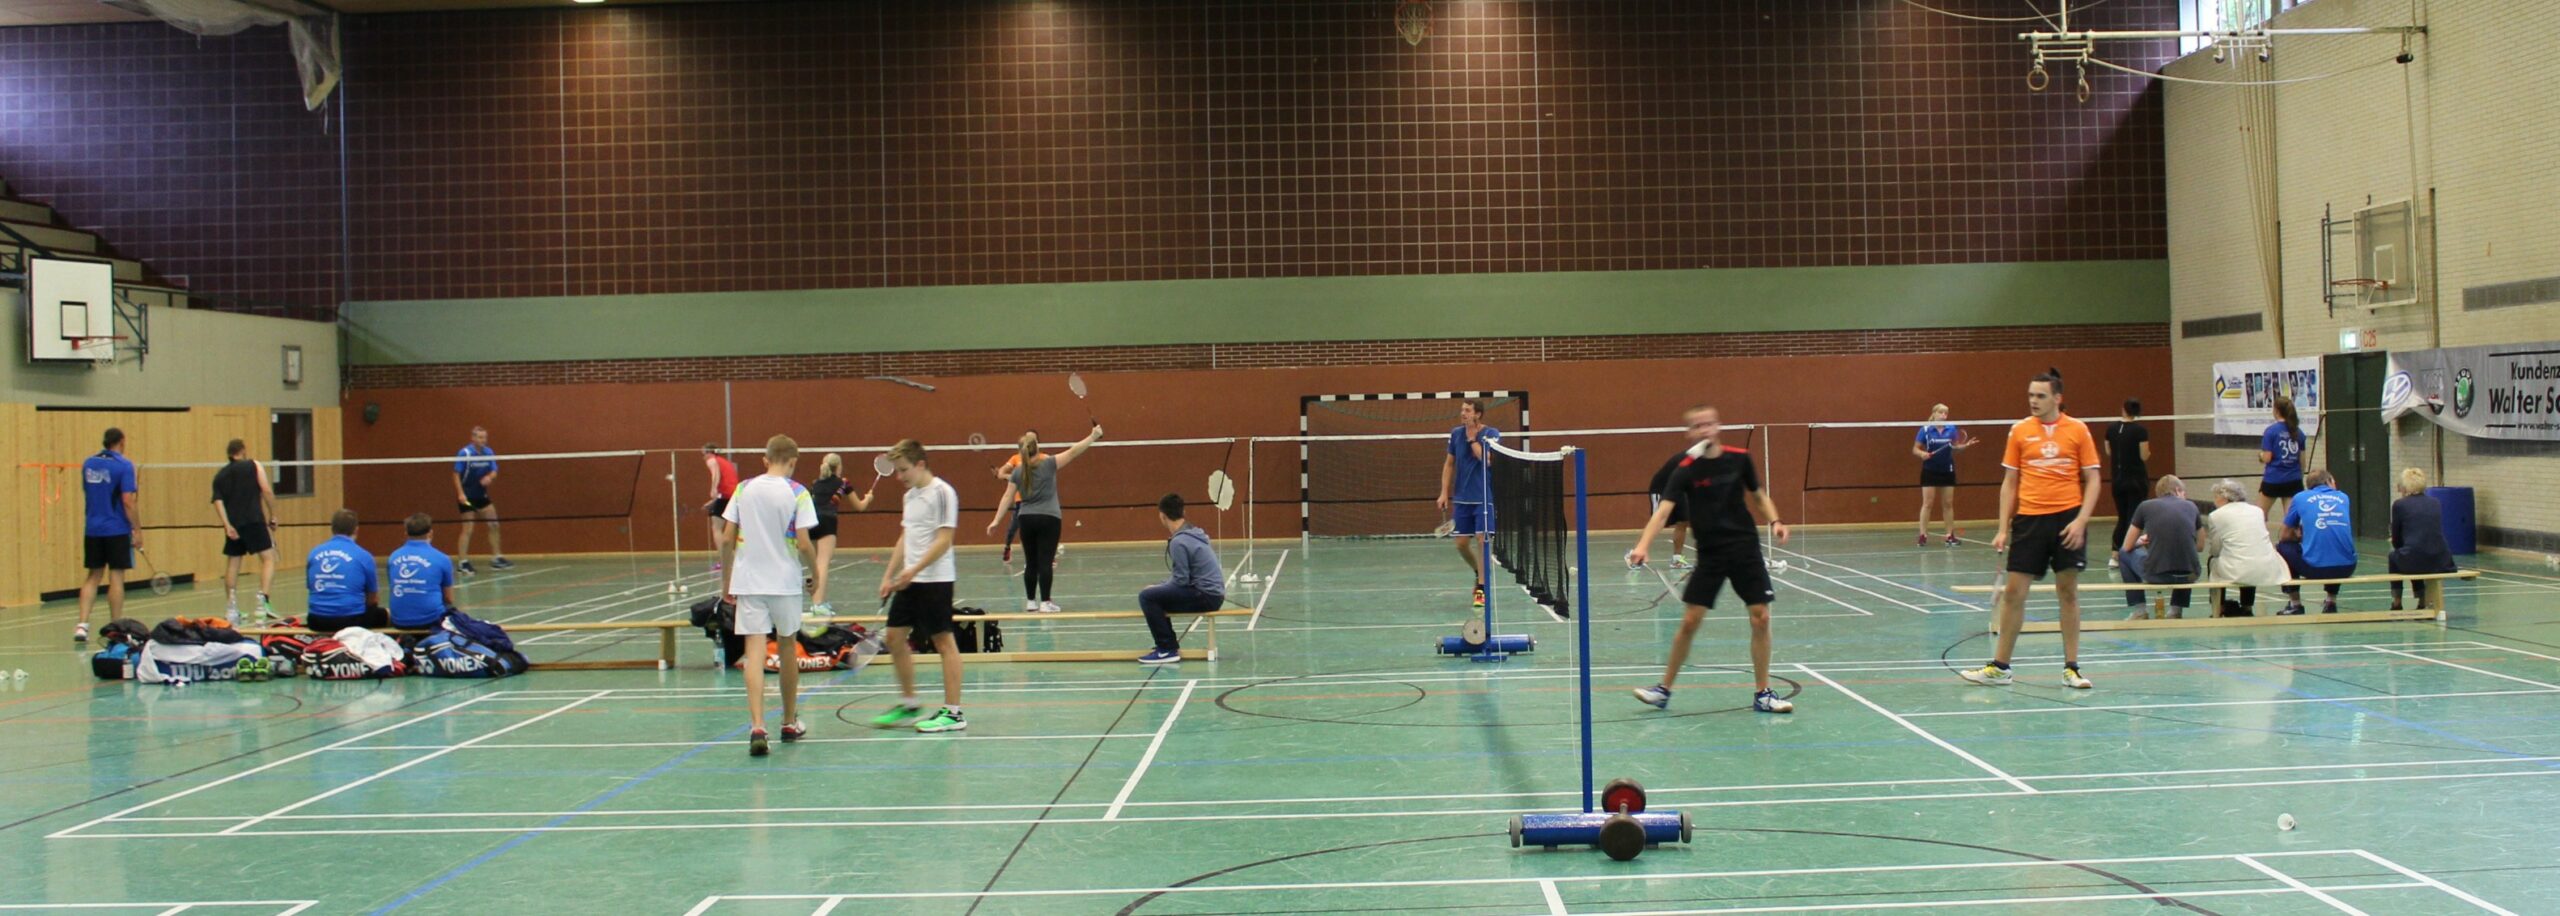 Badminton: Guter Start in die neue Saison